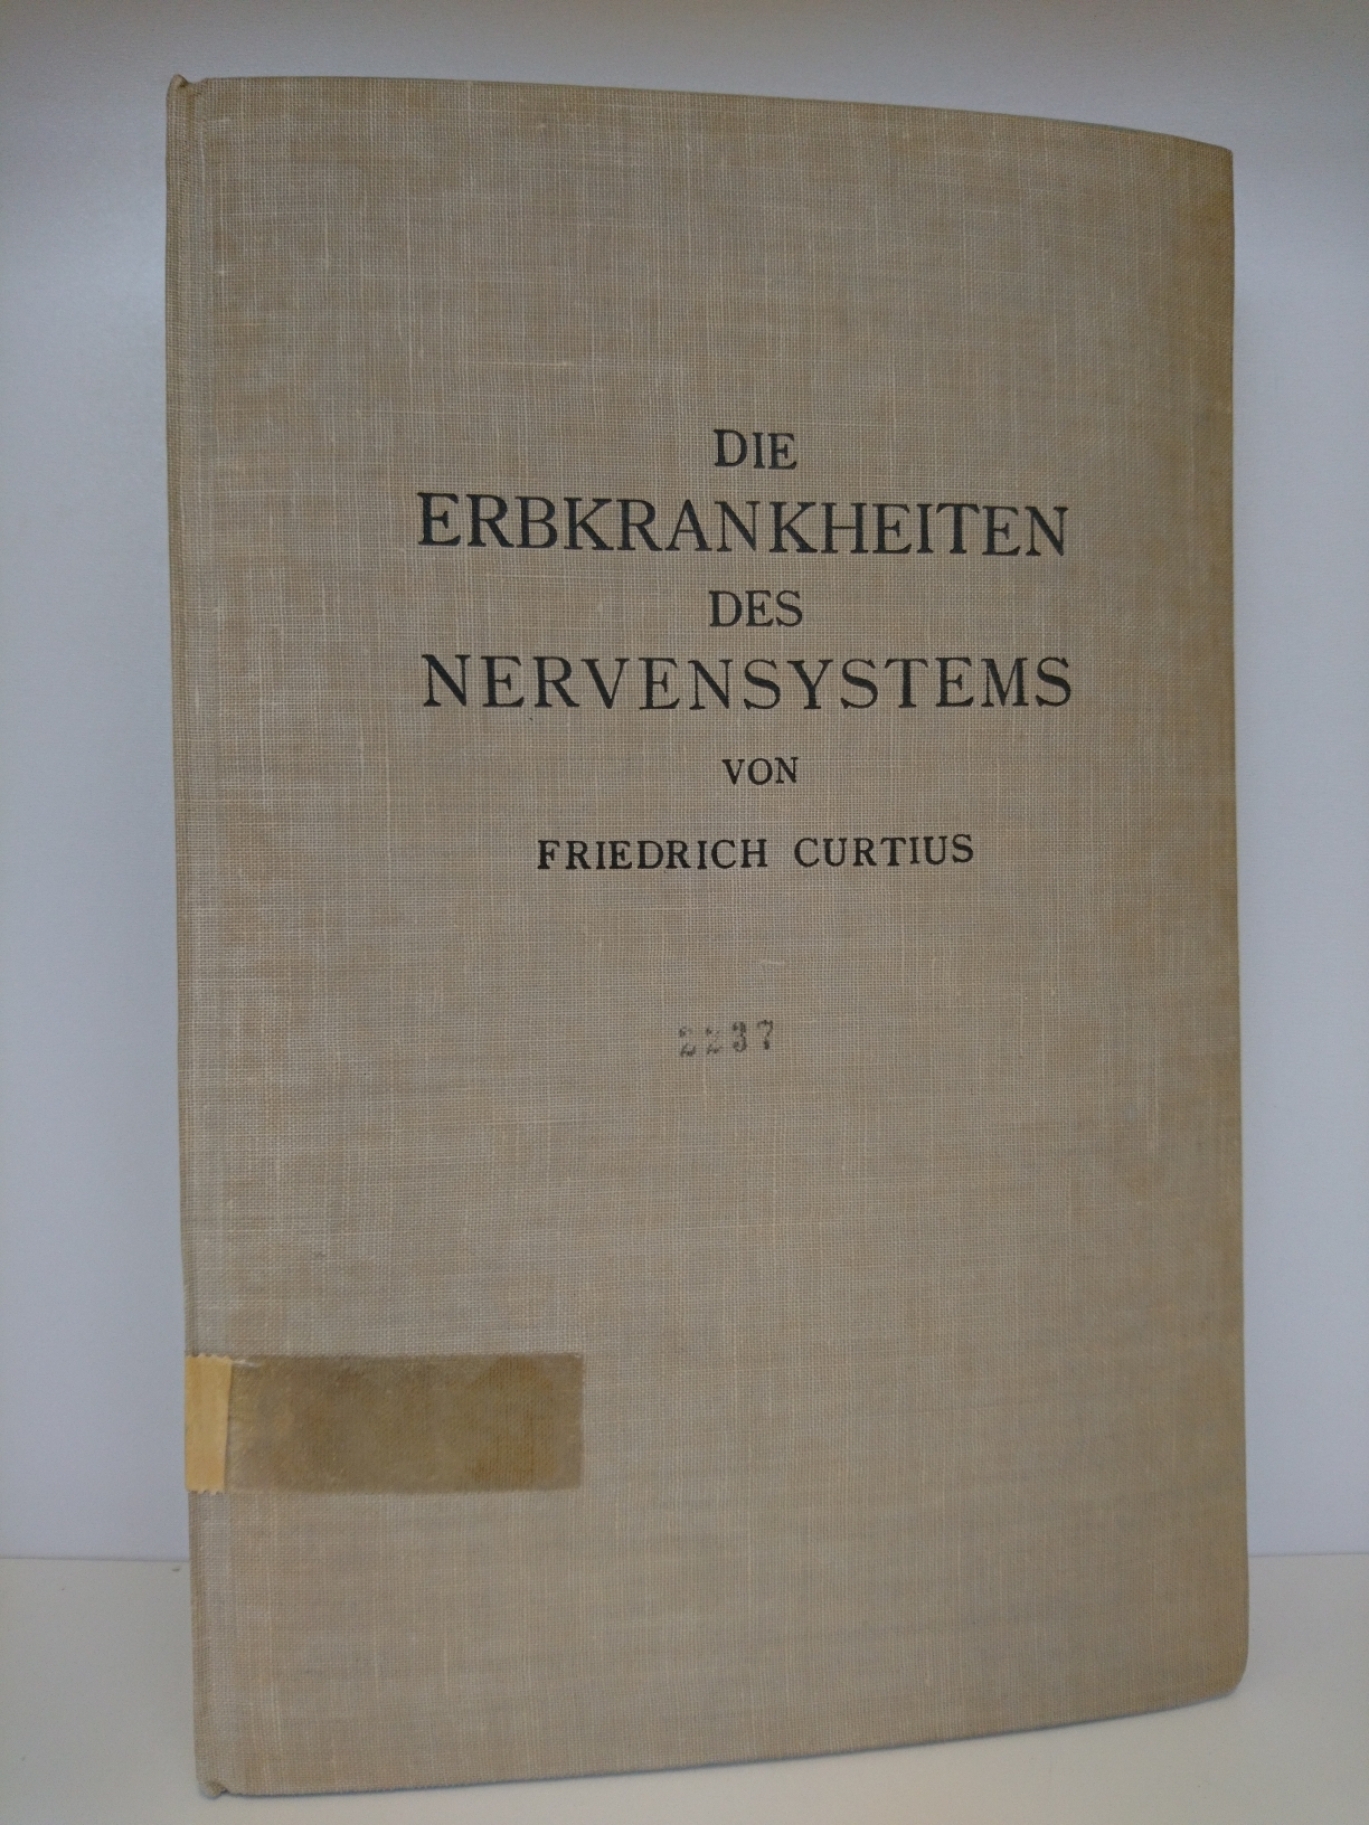 Curtius, Dr. Friedrich: Die organischen und funktionellen Erbkrankheiten des Nervensystems